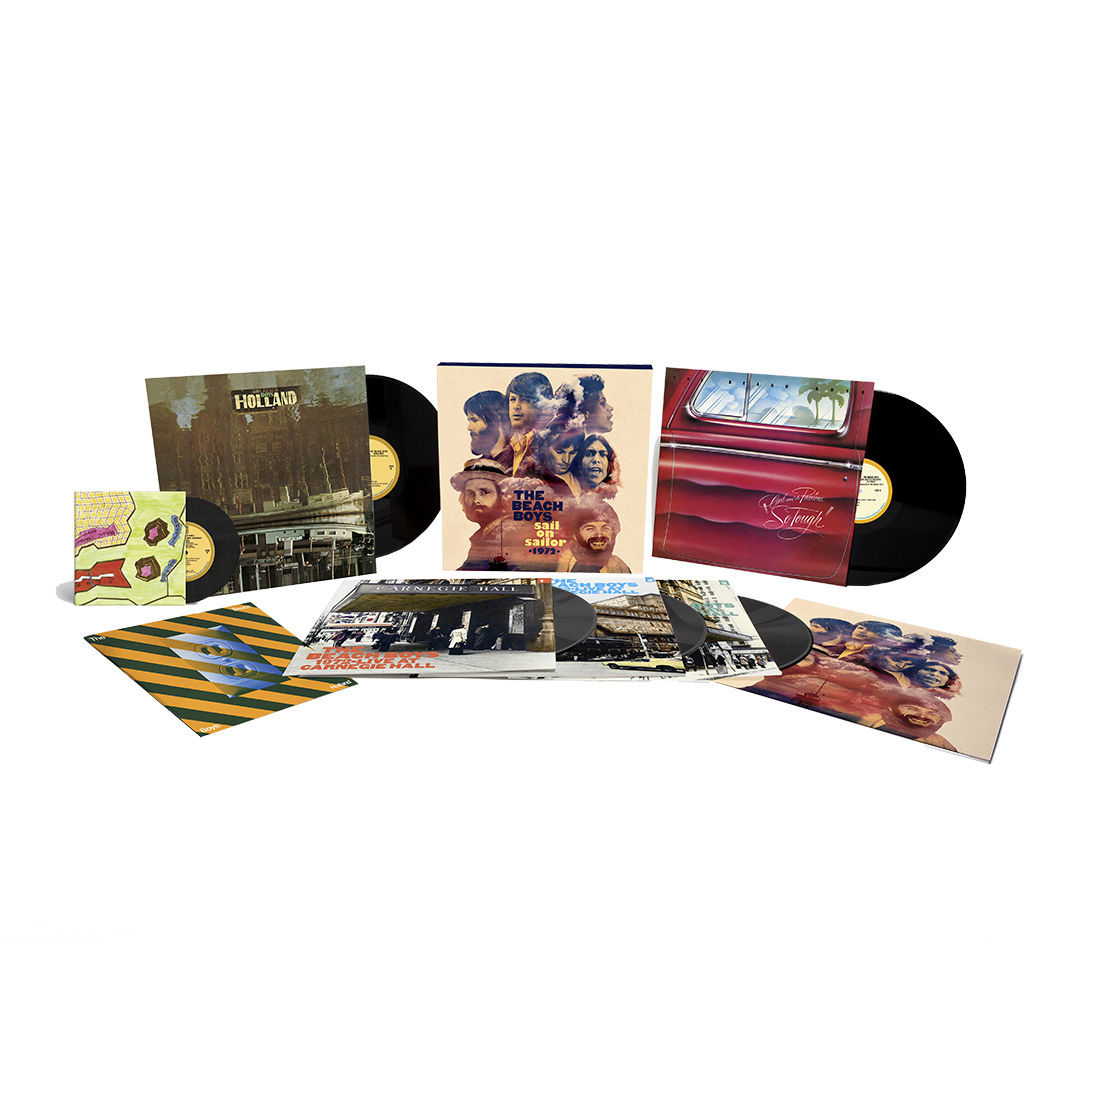 The Beach Boys - Sail On Sailor 1972: Limited Vinyl 5LP + 7" EP Box Set